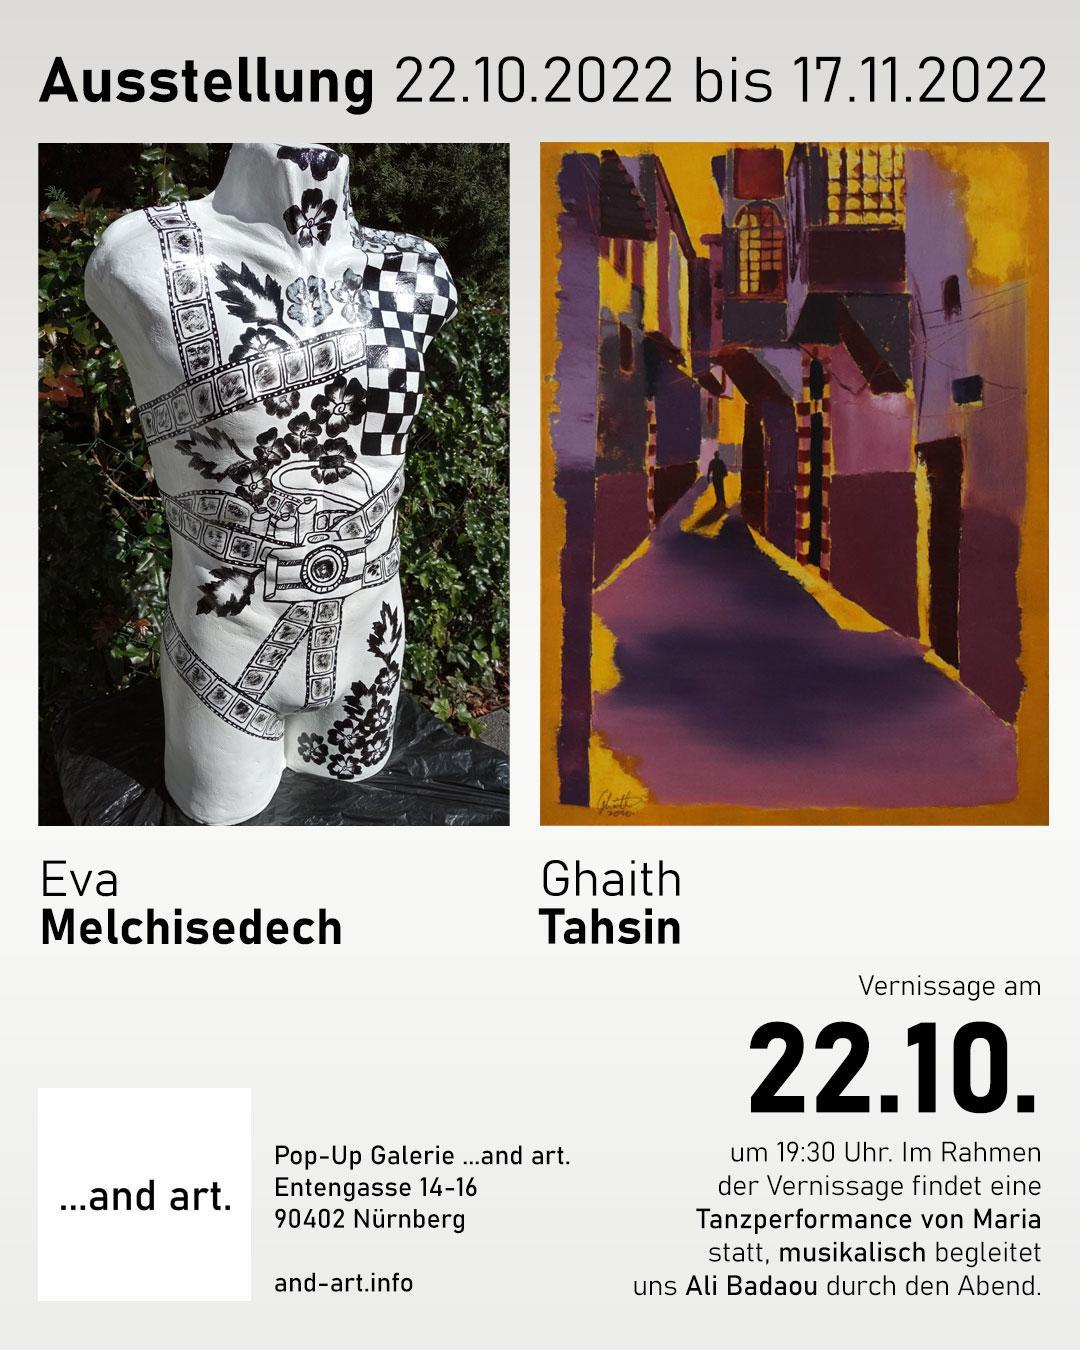 Vernissage zur Ausstellung Ghaith Tahsin und Eva Melchisedech